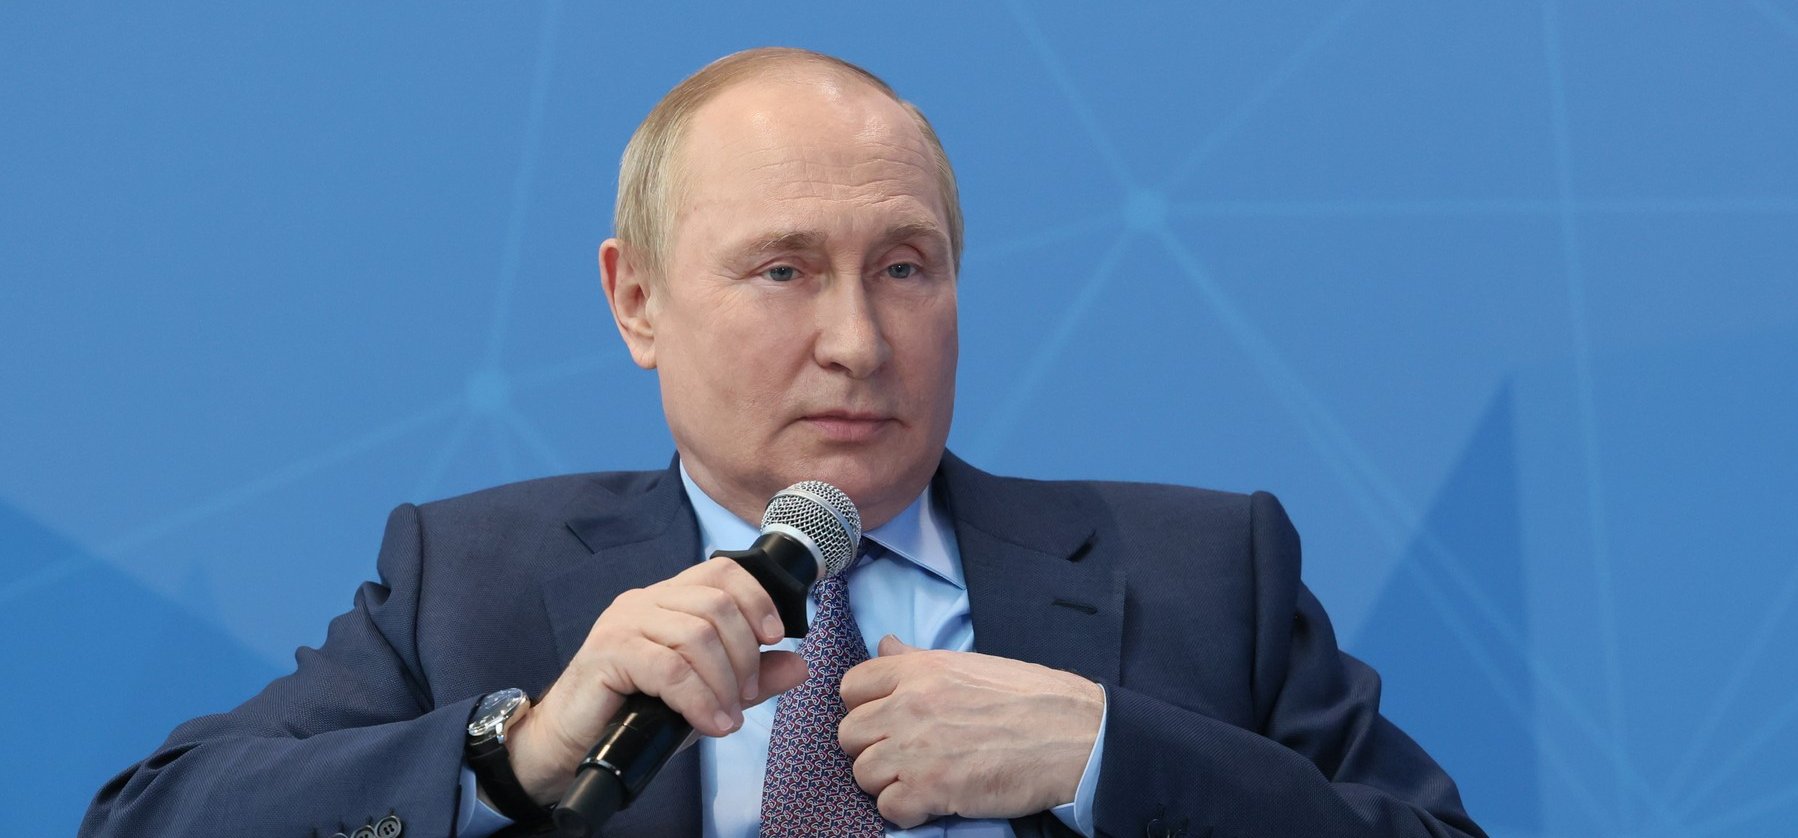 Putyin meghökkentő kijelentéseket tett Moszkvában - Tényleg így látja a dolgokat az orosz elnök?